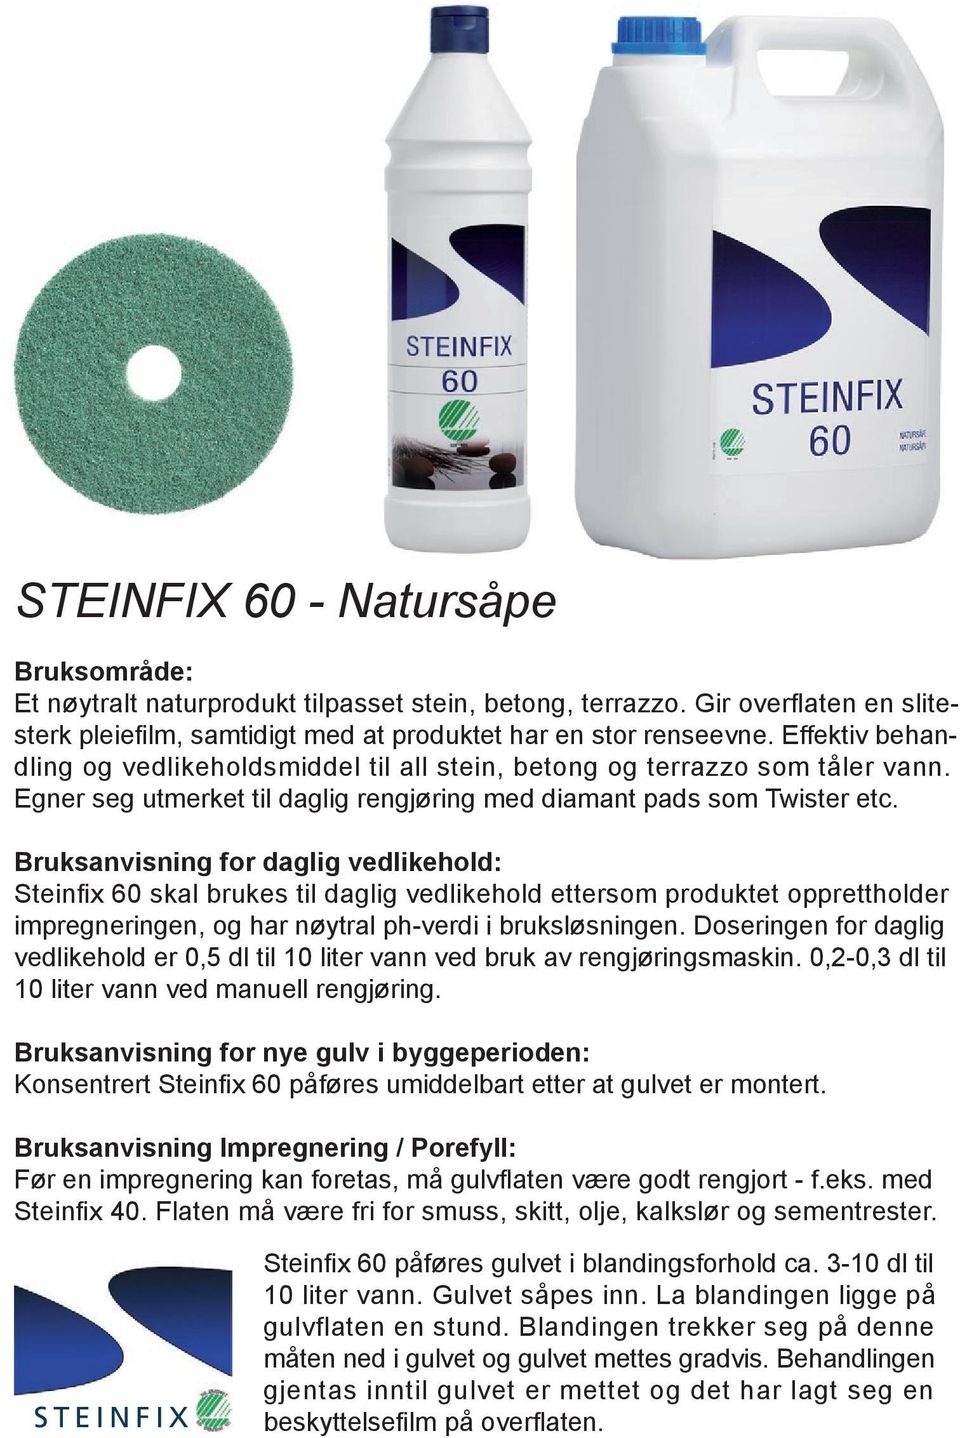 Bruksanvisning for daglig vedlikehold: Steinfi x 60 skal brukes til daglig vedlikehold ettersom produktet opprettholder impregneringen, og har nøytral ph-verdi i bruksløsningen.